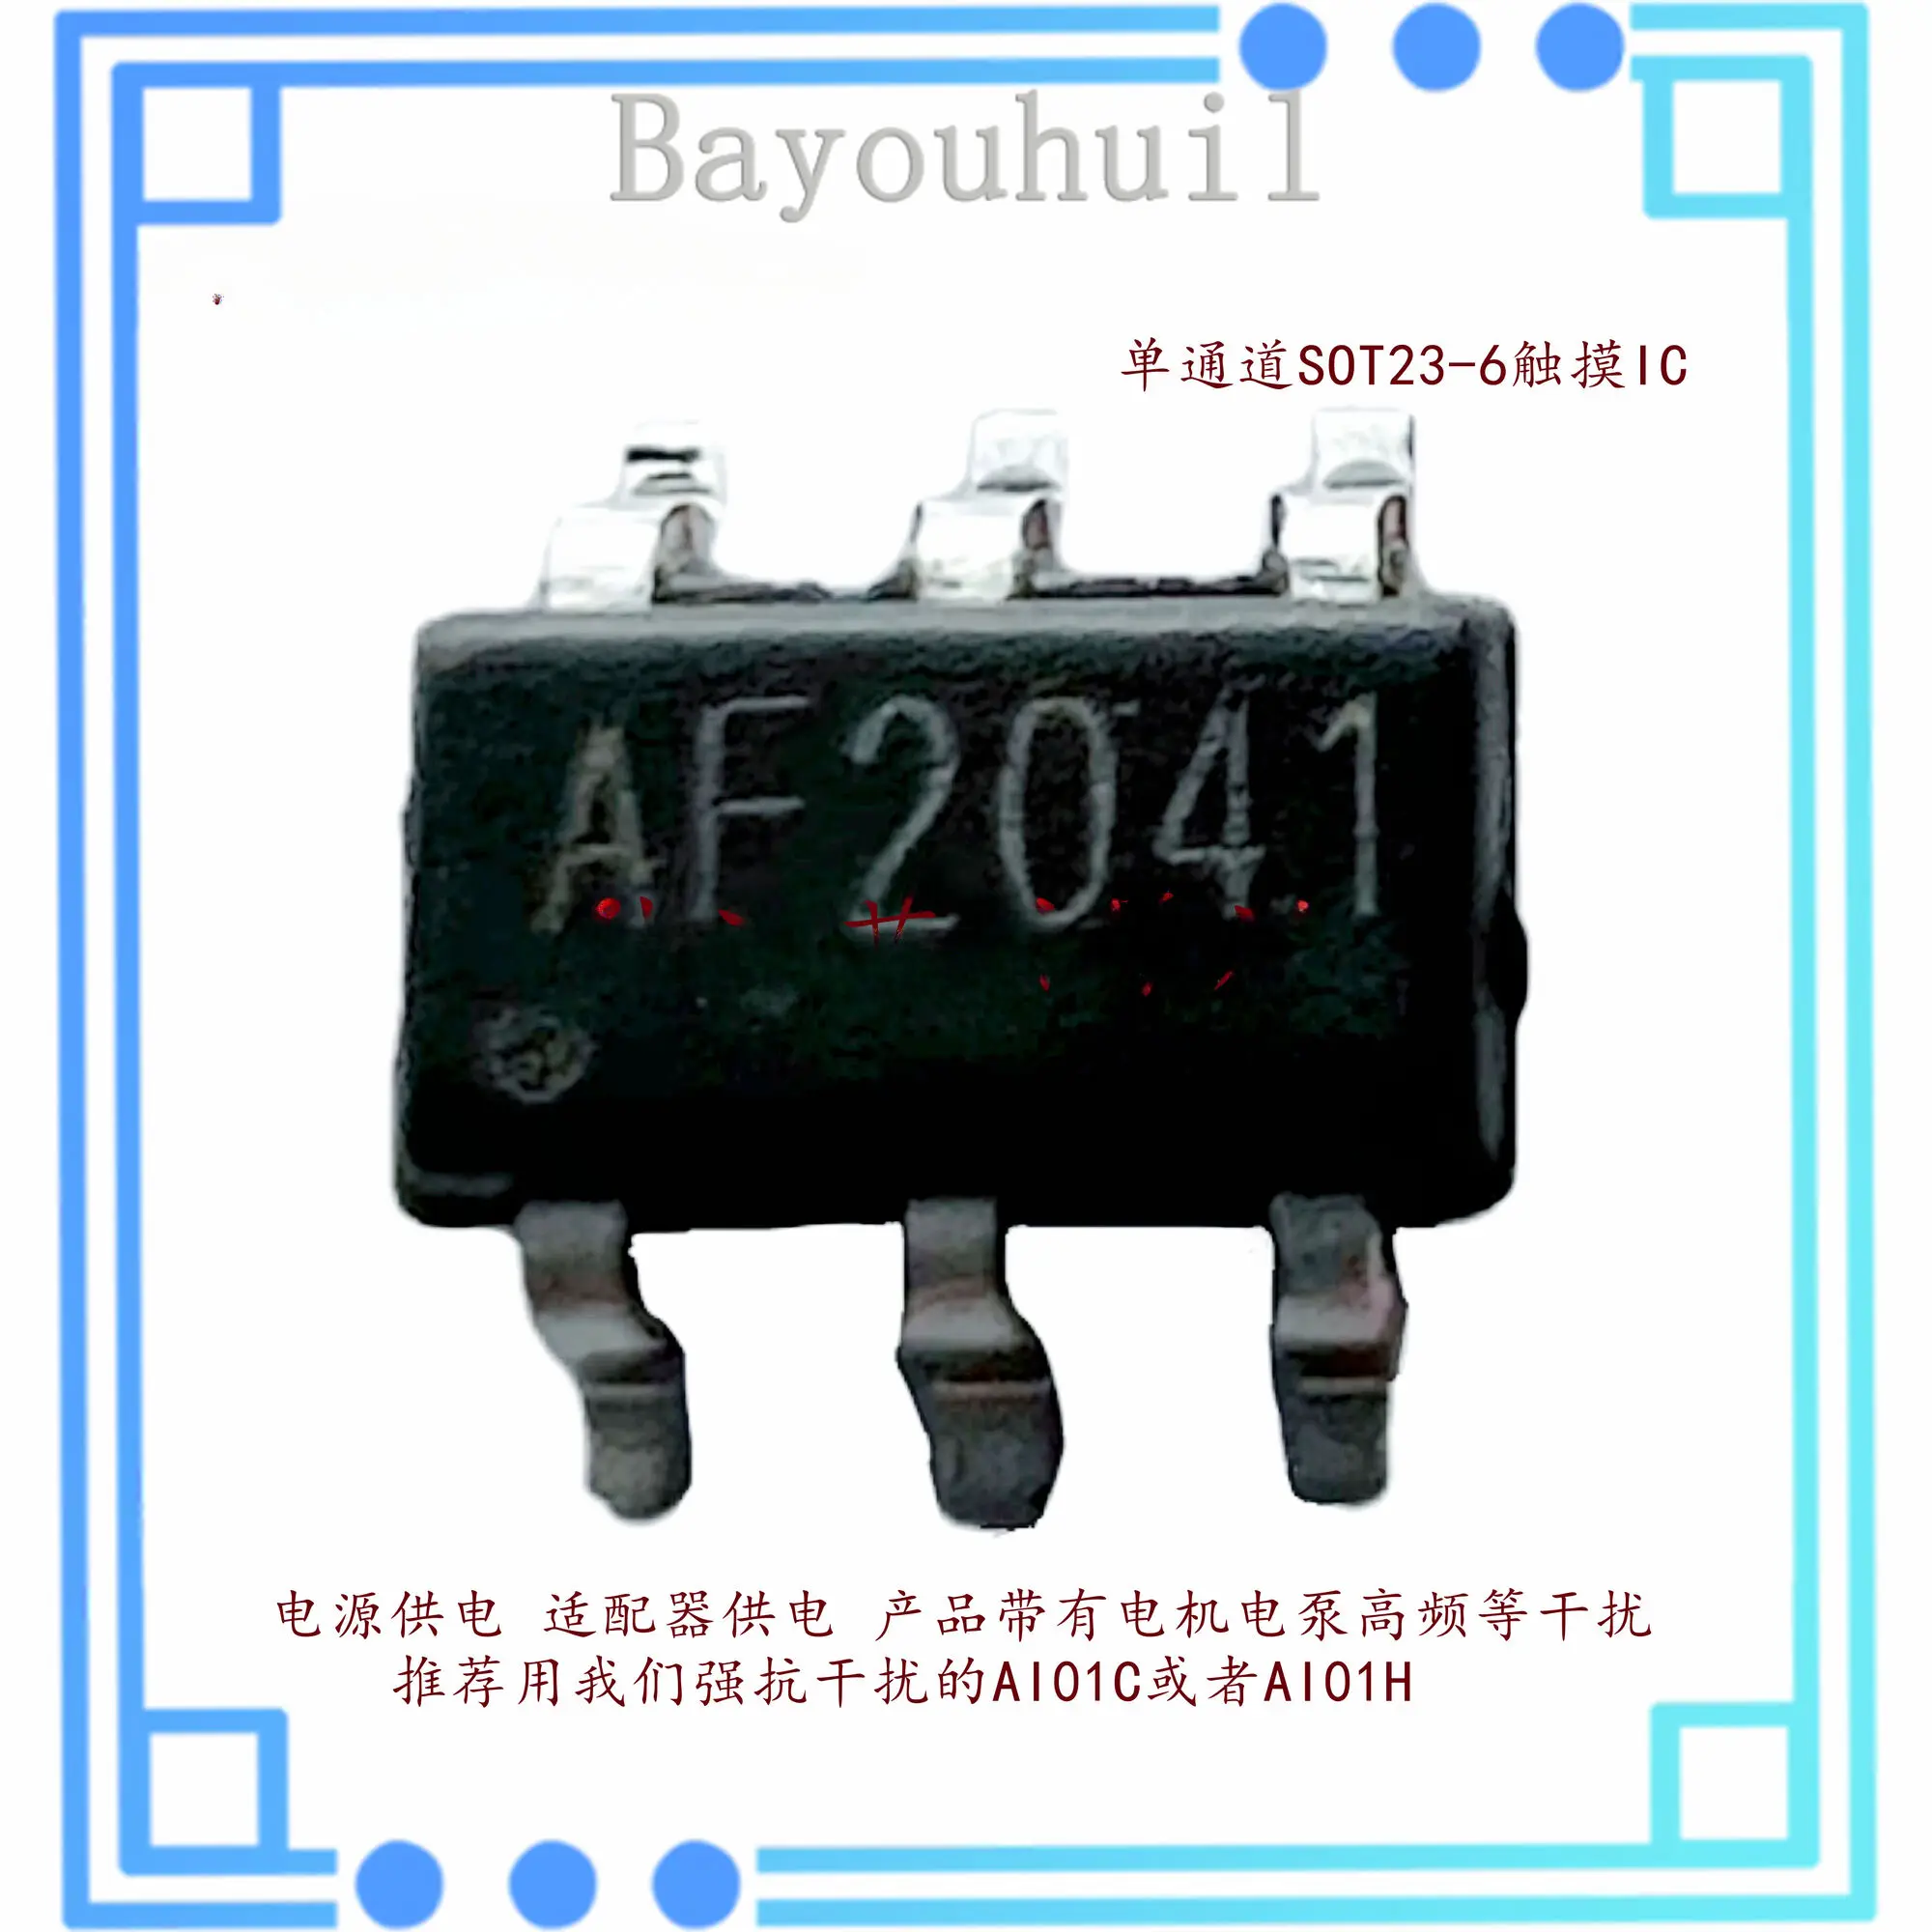 10ШТ AF2041 Обеспечивает долговременную производительность 64 с, одноканальная встроенная сенсорная микросхема Ldo, подходит для инструментов и других изделий.